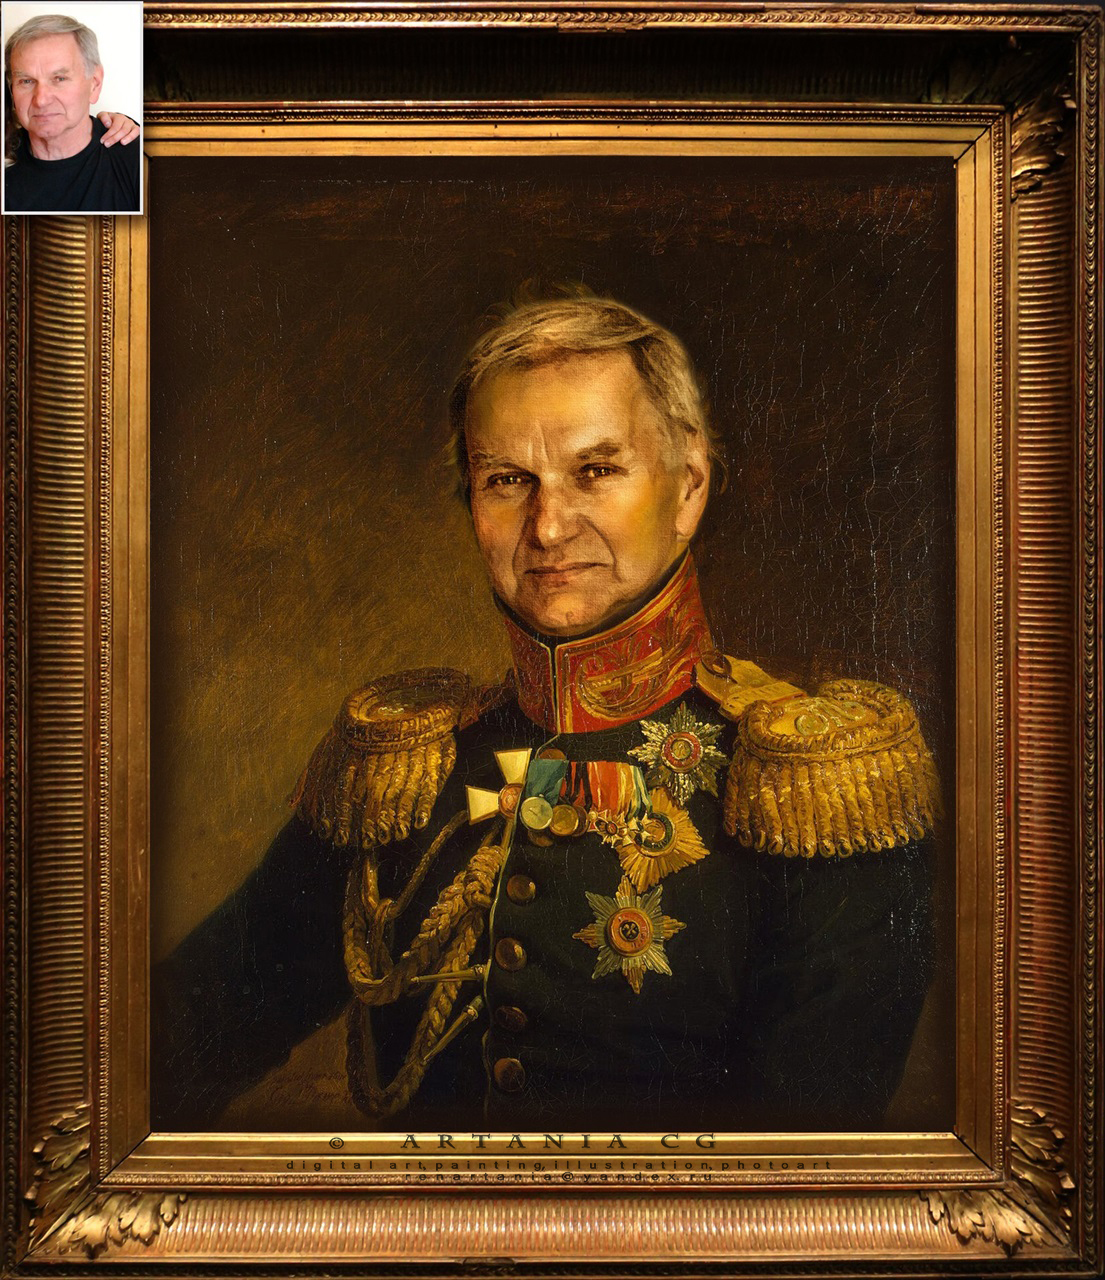 Мужской портрет в образе военного 19 века - коллаж